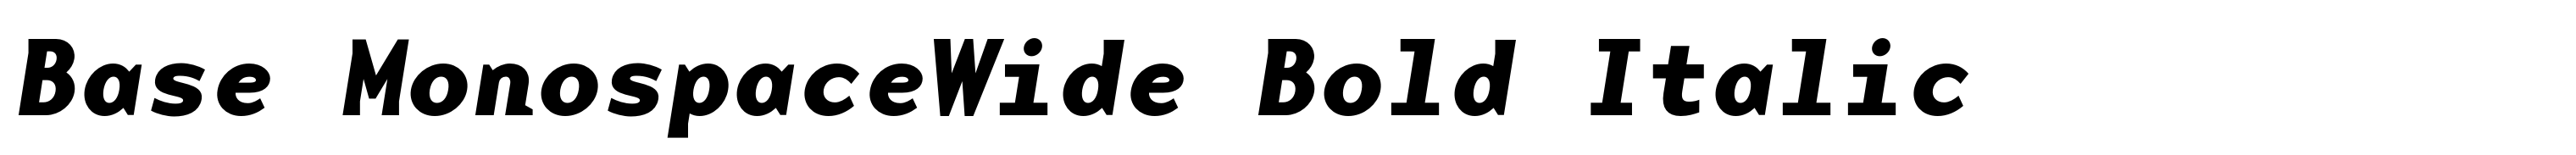 Base MonospaceWide Bold Italic